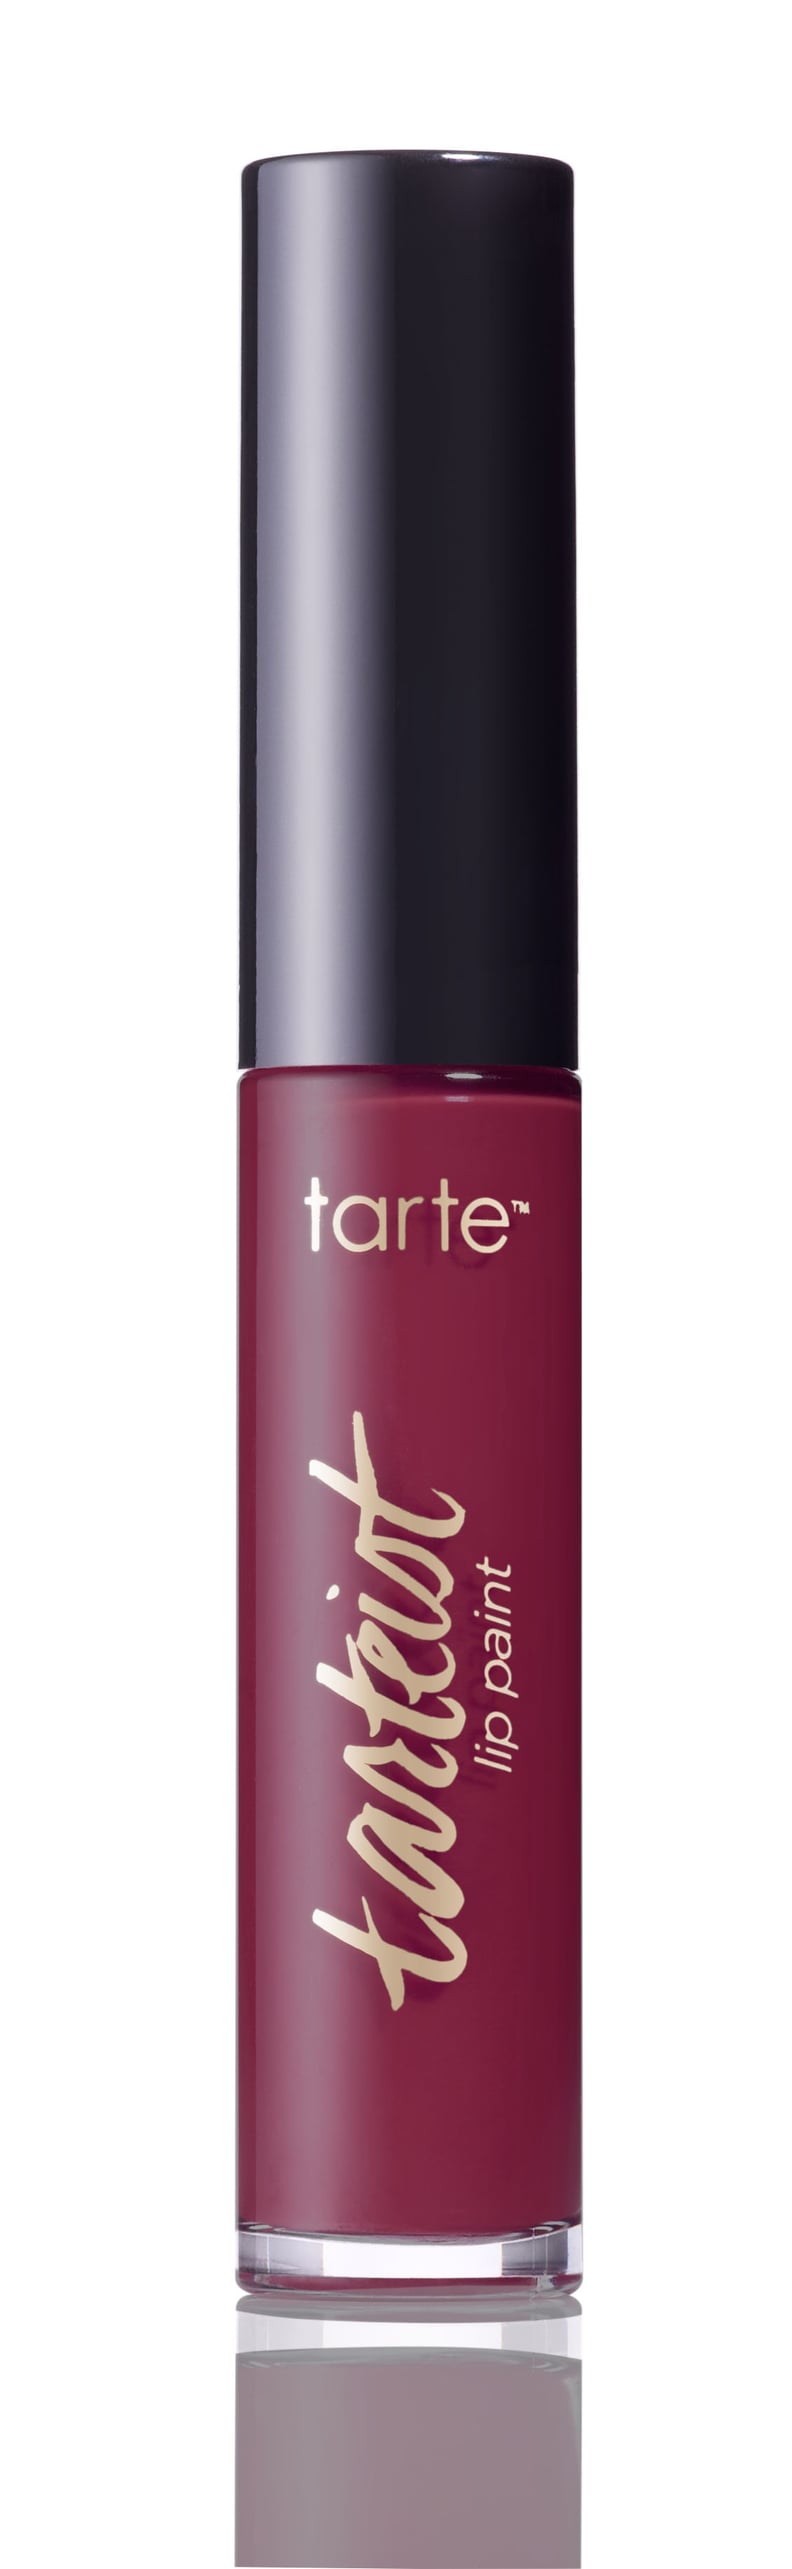 Tarte Cosmetics Tarteist Lip Paint in Lovespell